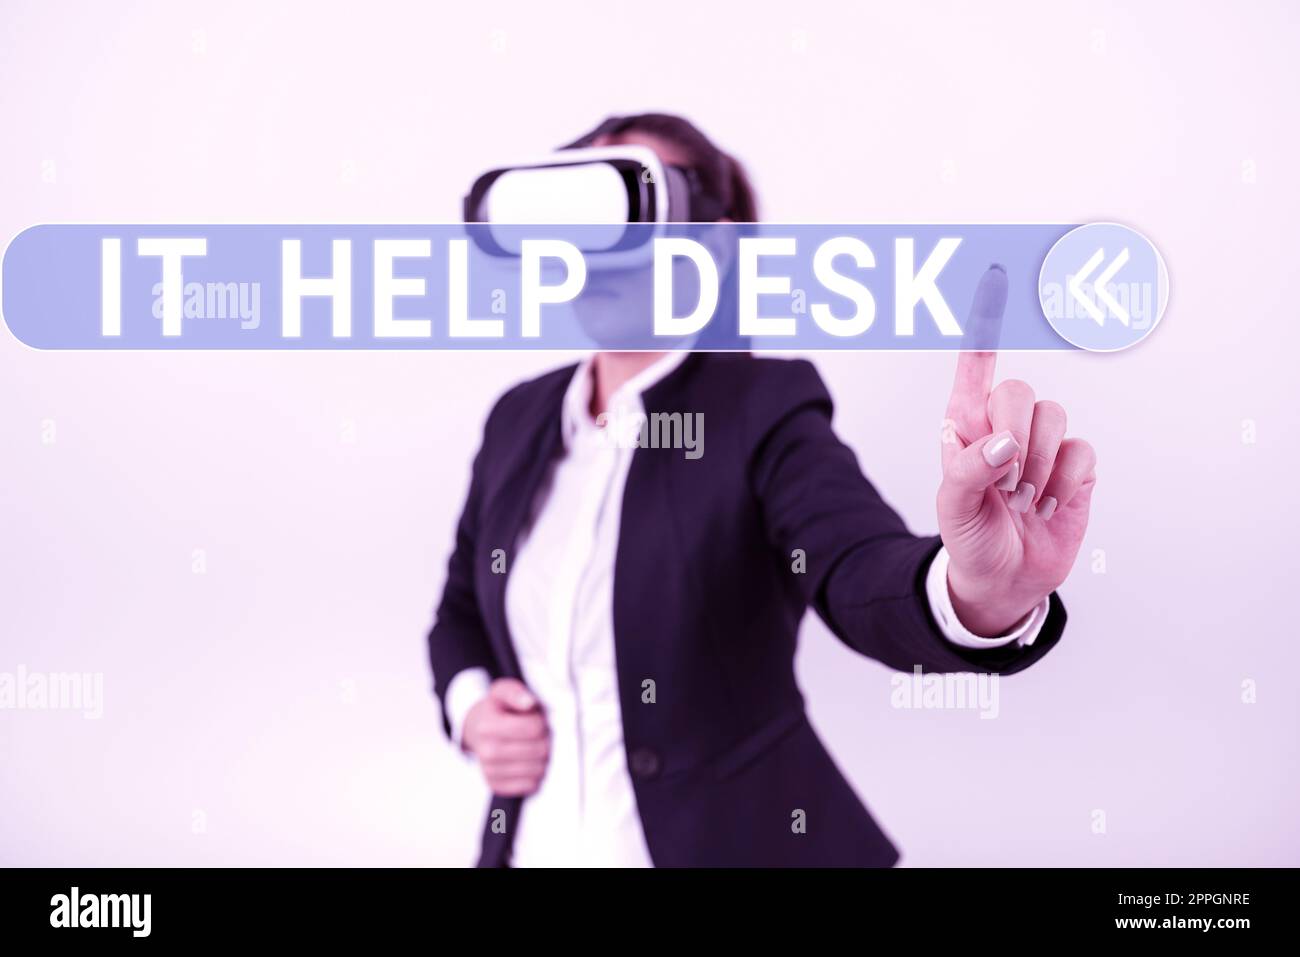 Inspiration mit Sign IT Help Desk. Internetkonzept Online-Support-Hilfe, die Ihnen hilft, mit Technologie wichtige Ideen zu präsentieren, die unter zerrissener Pappe mit farbigen Haken geschrieben sind. Stockfoto